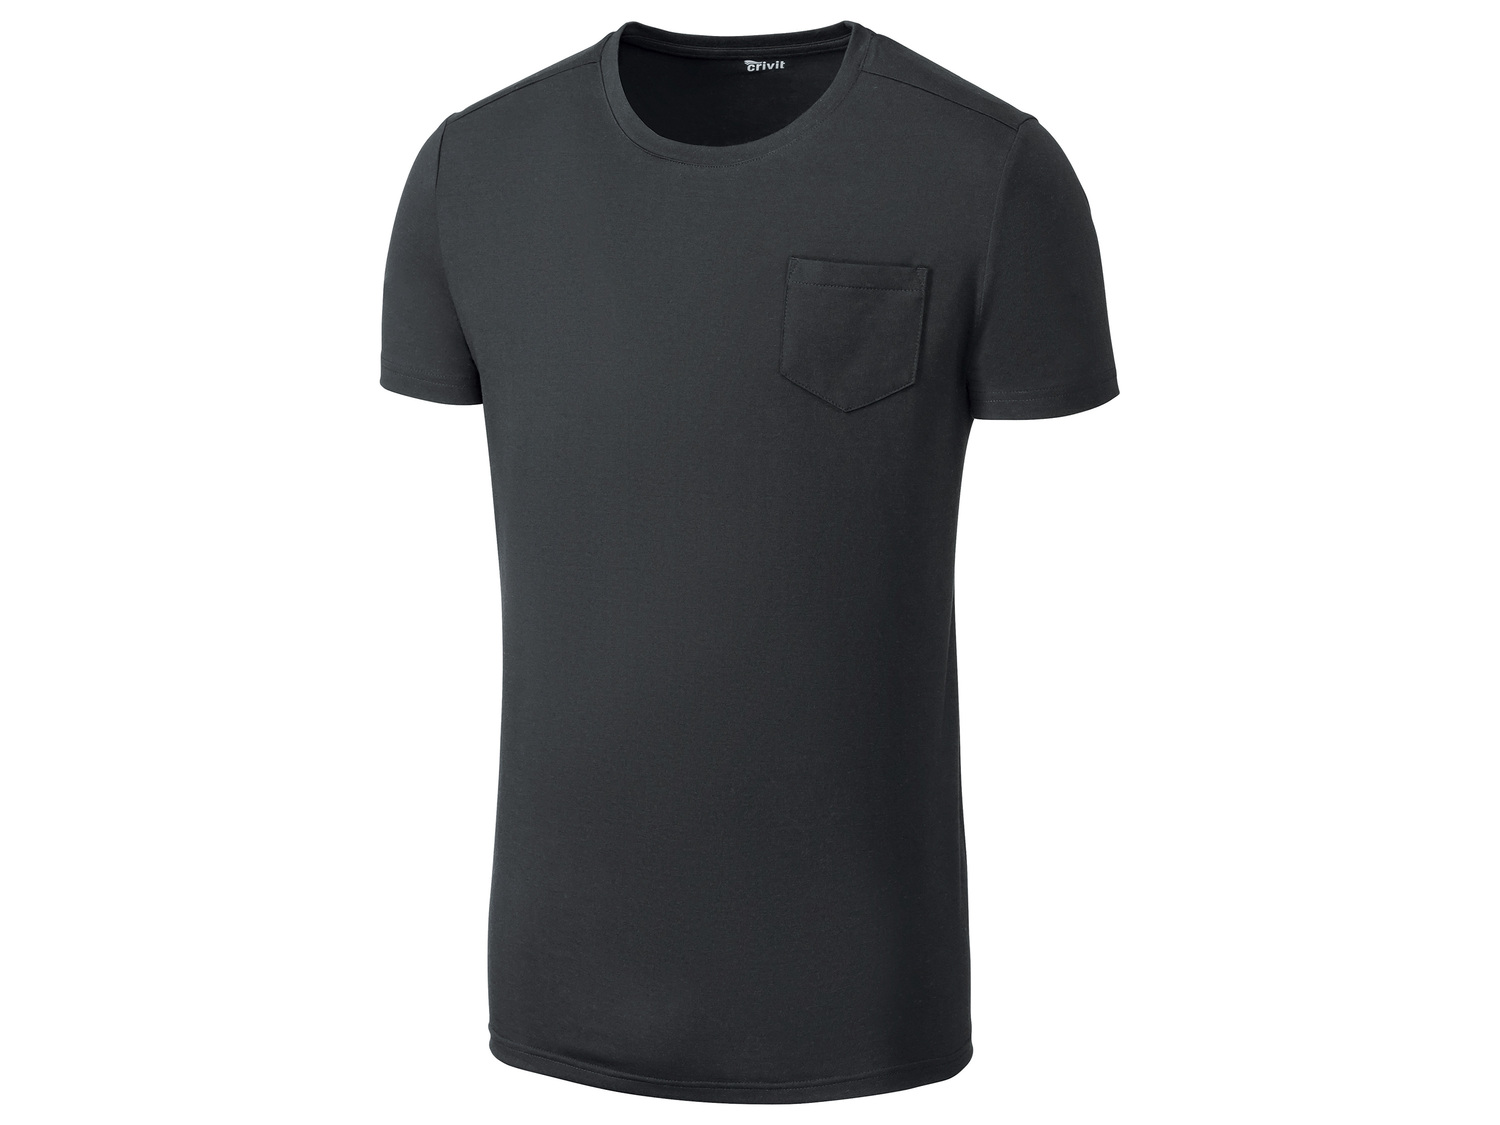 T-shirt technique , le prix 4.99 € 
- Ex. 80 % polyester et 20 % coton
- Evacue ...